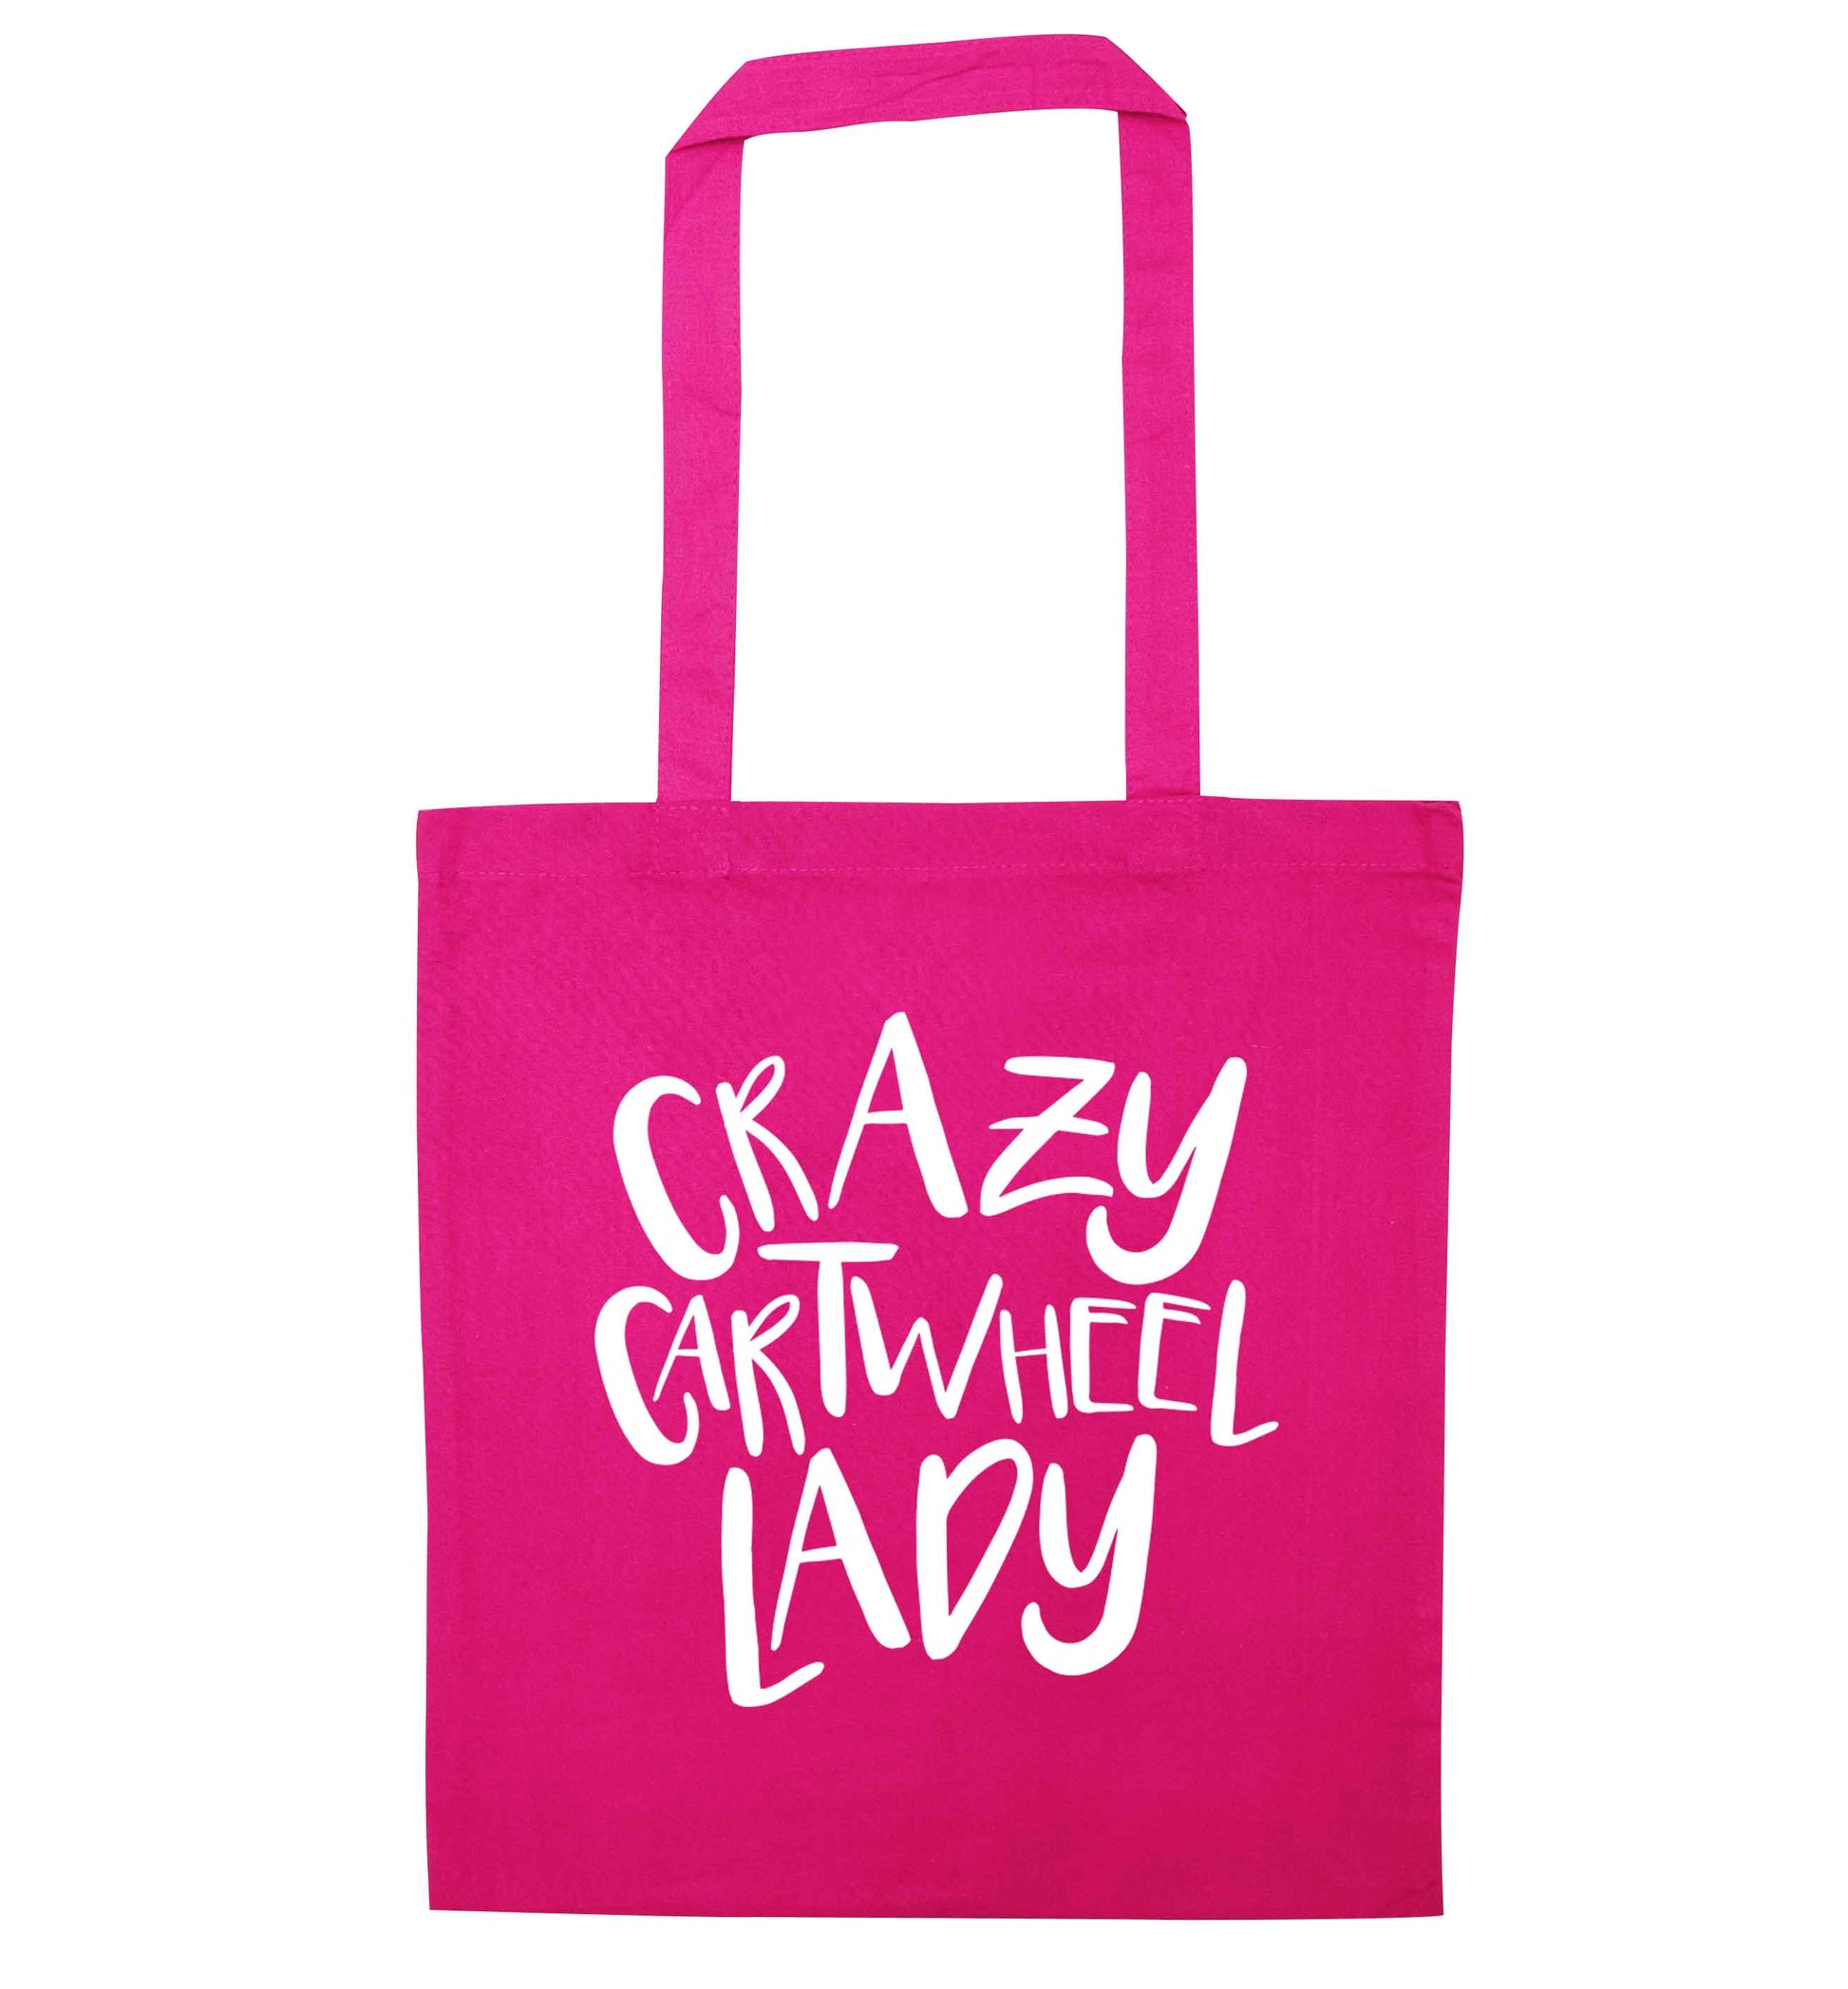 Crazy cartwheel lady pink tote bag